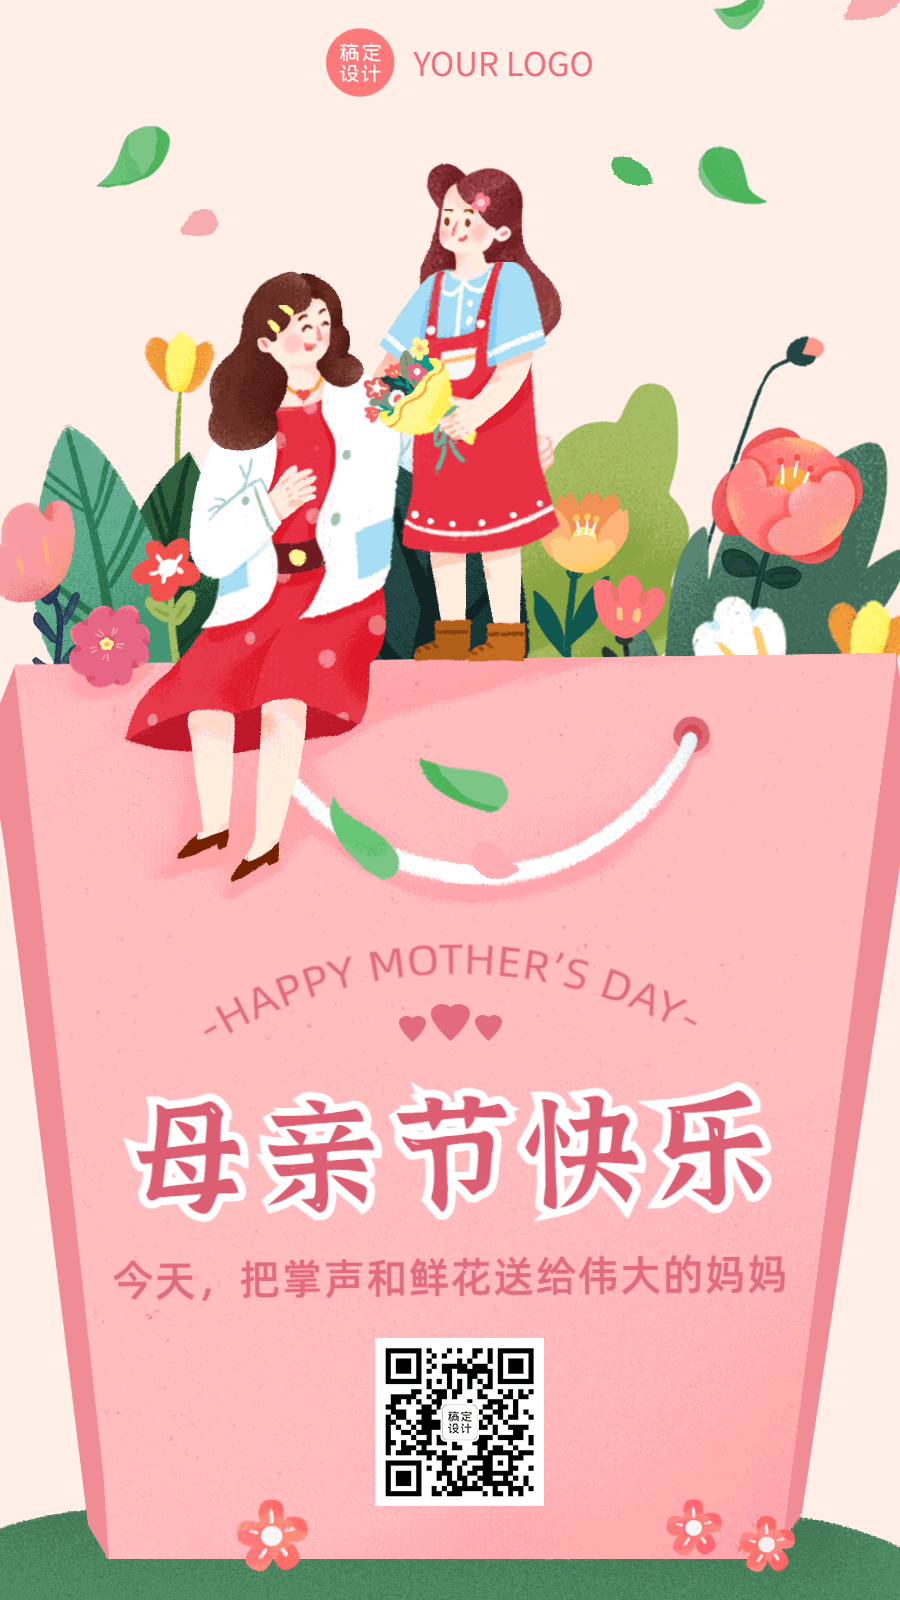 母亲节节日祝福插画动态海报